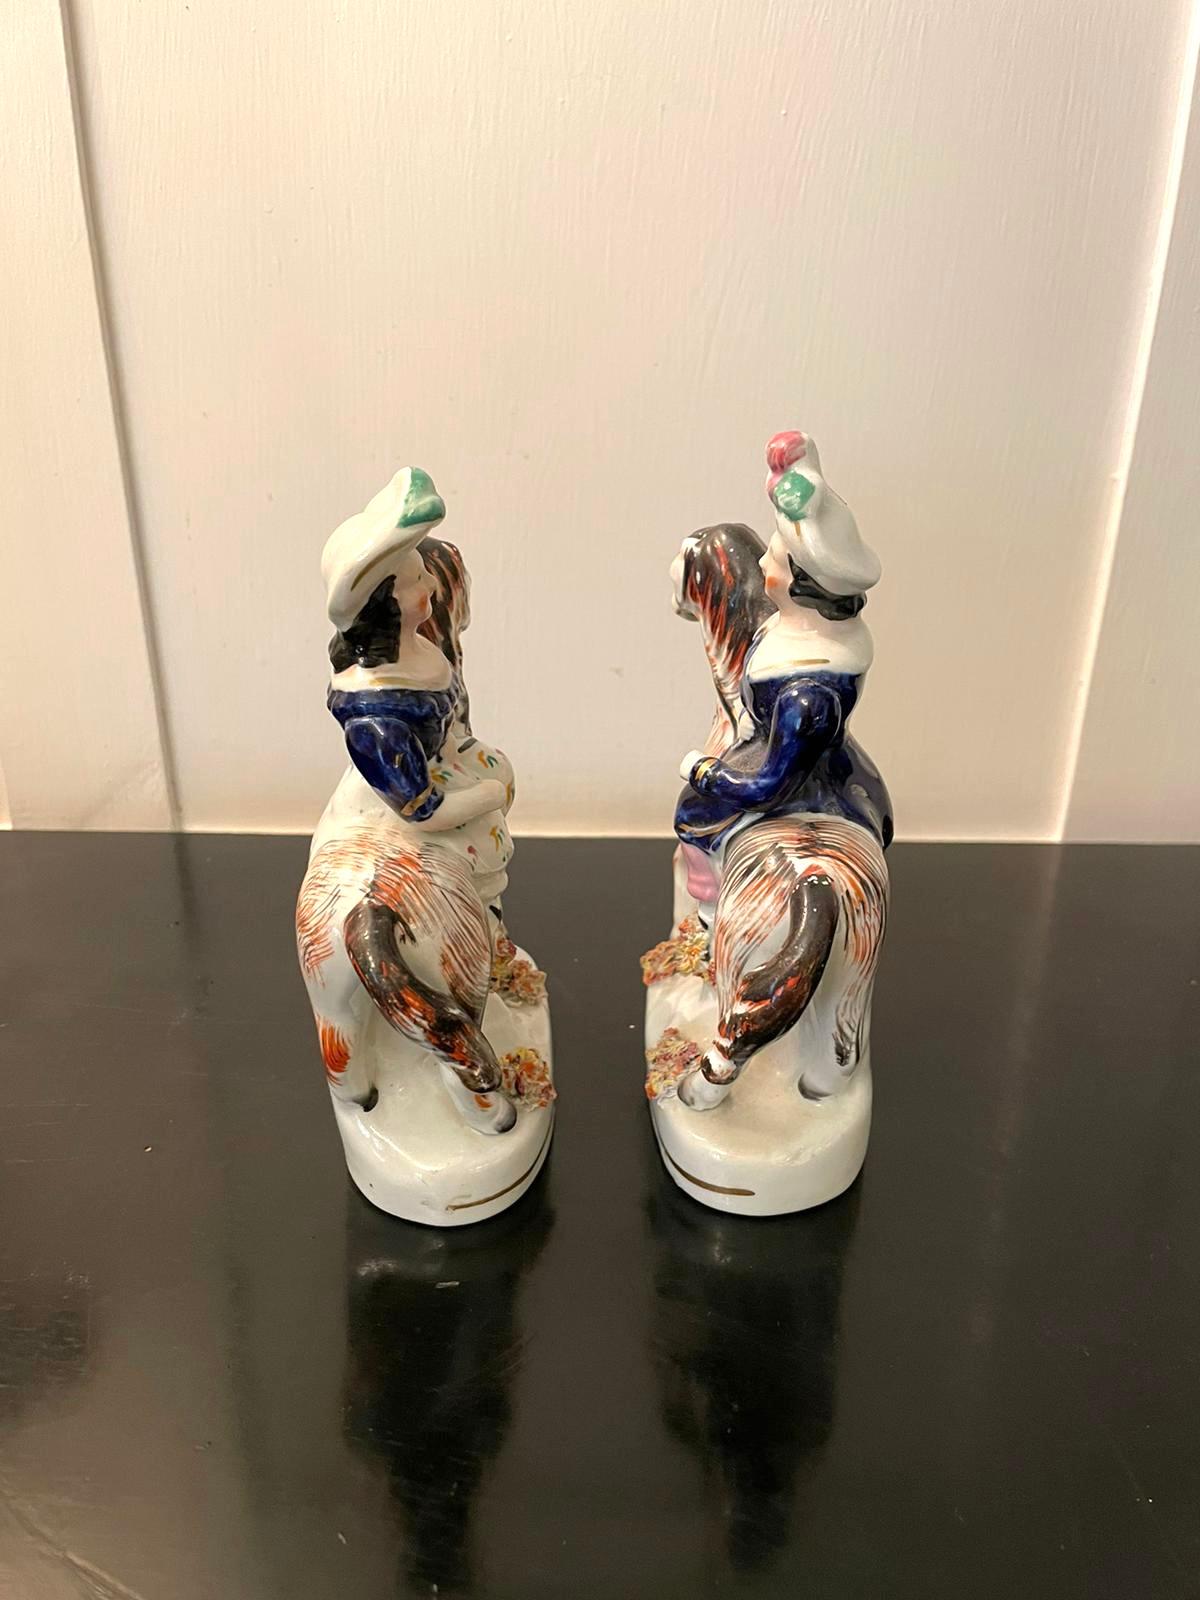 Paire d'anciennes figurines Victoriennes Staffordshire représentant deux dames en vêtements d'époque chevauchant des chevaux colorés sur des bases de forme ovale.

En très bon état d'origine.

Mesures : H 15 cm 
L 10 cm 
D 4,5 cm
Date 1880.
 